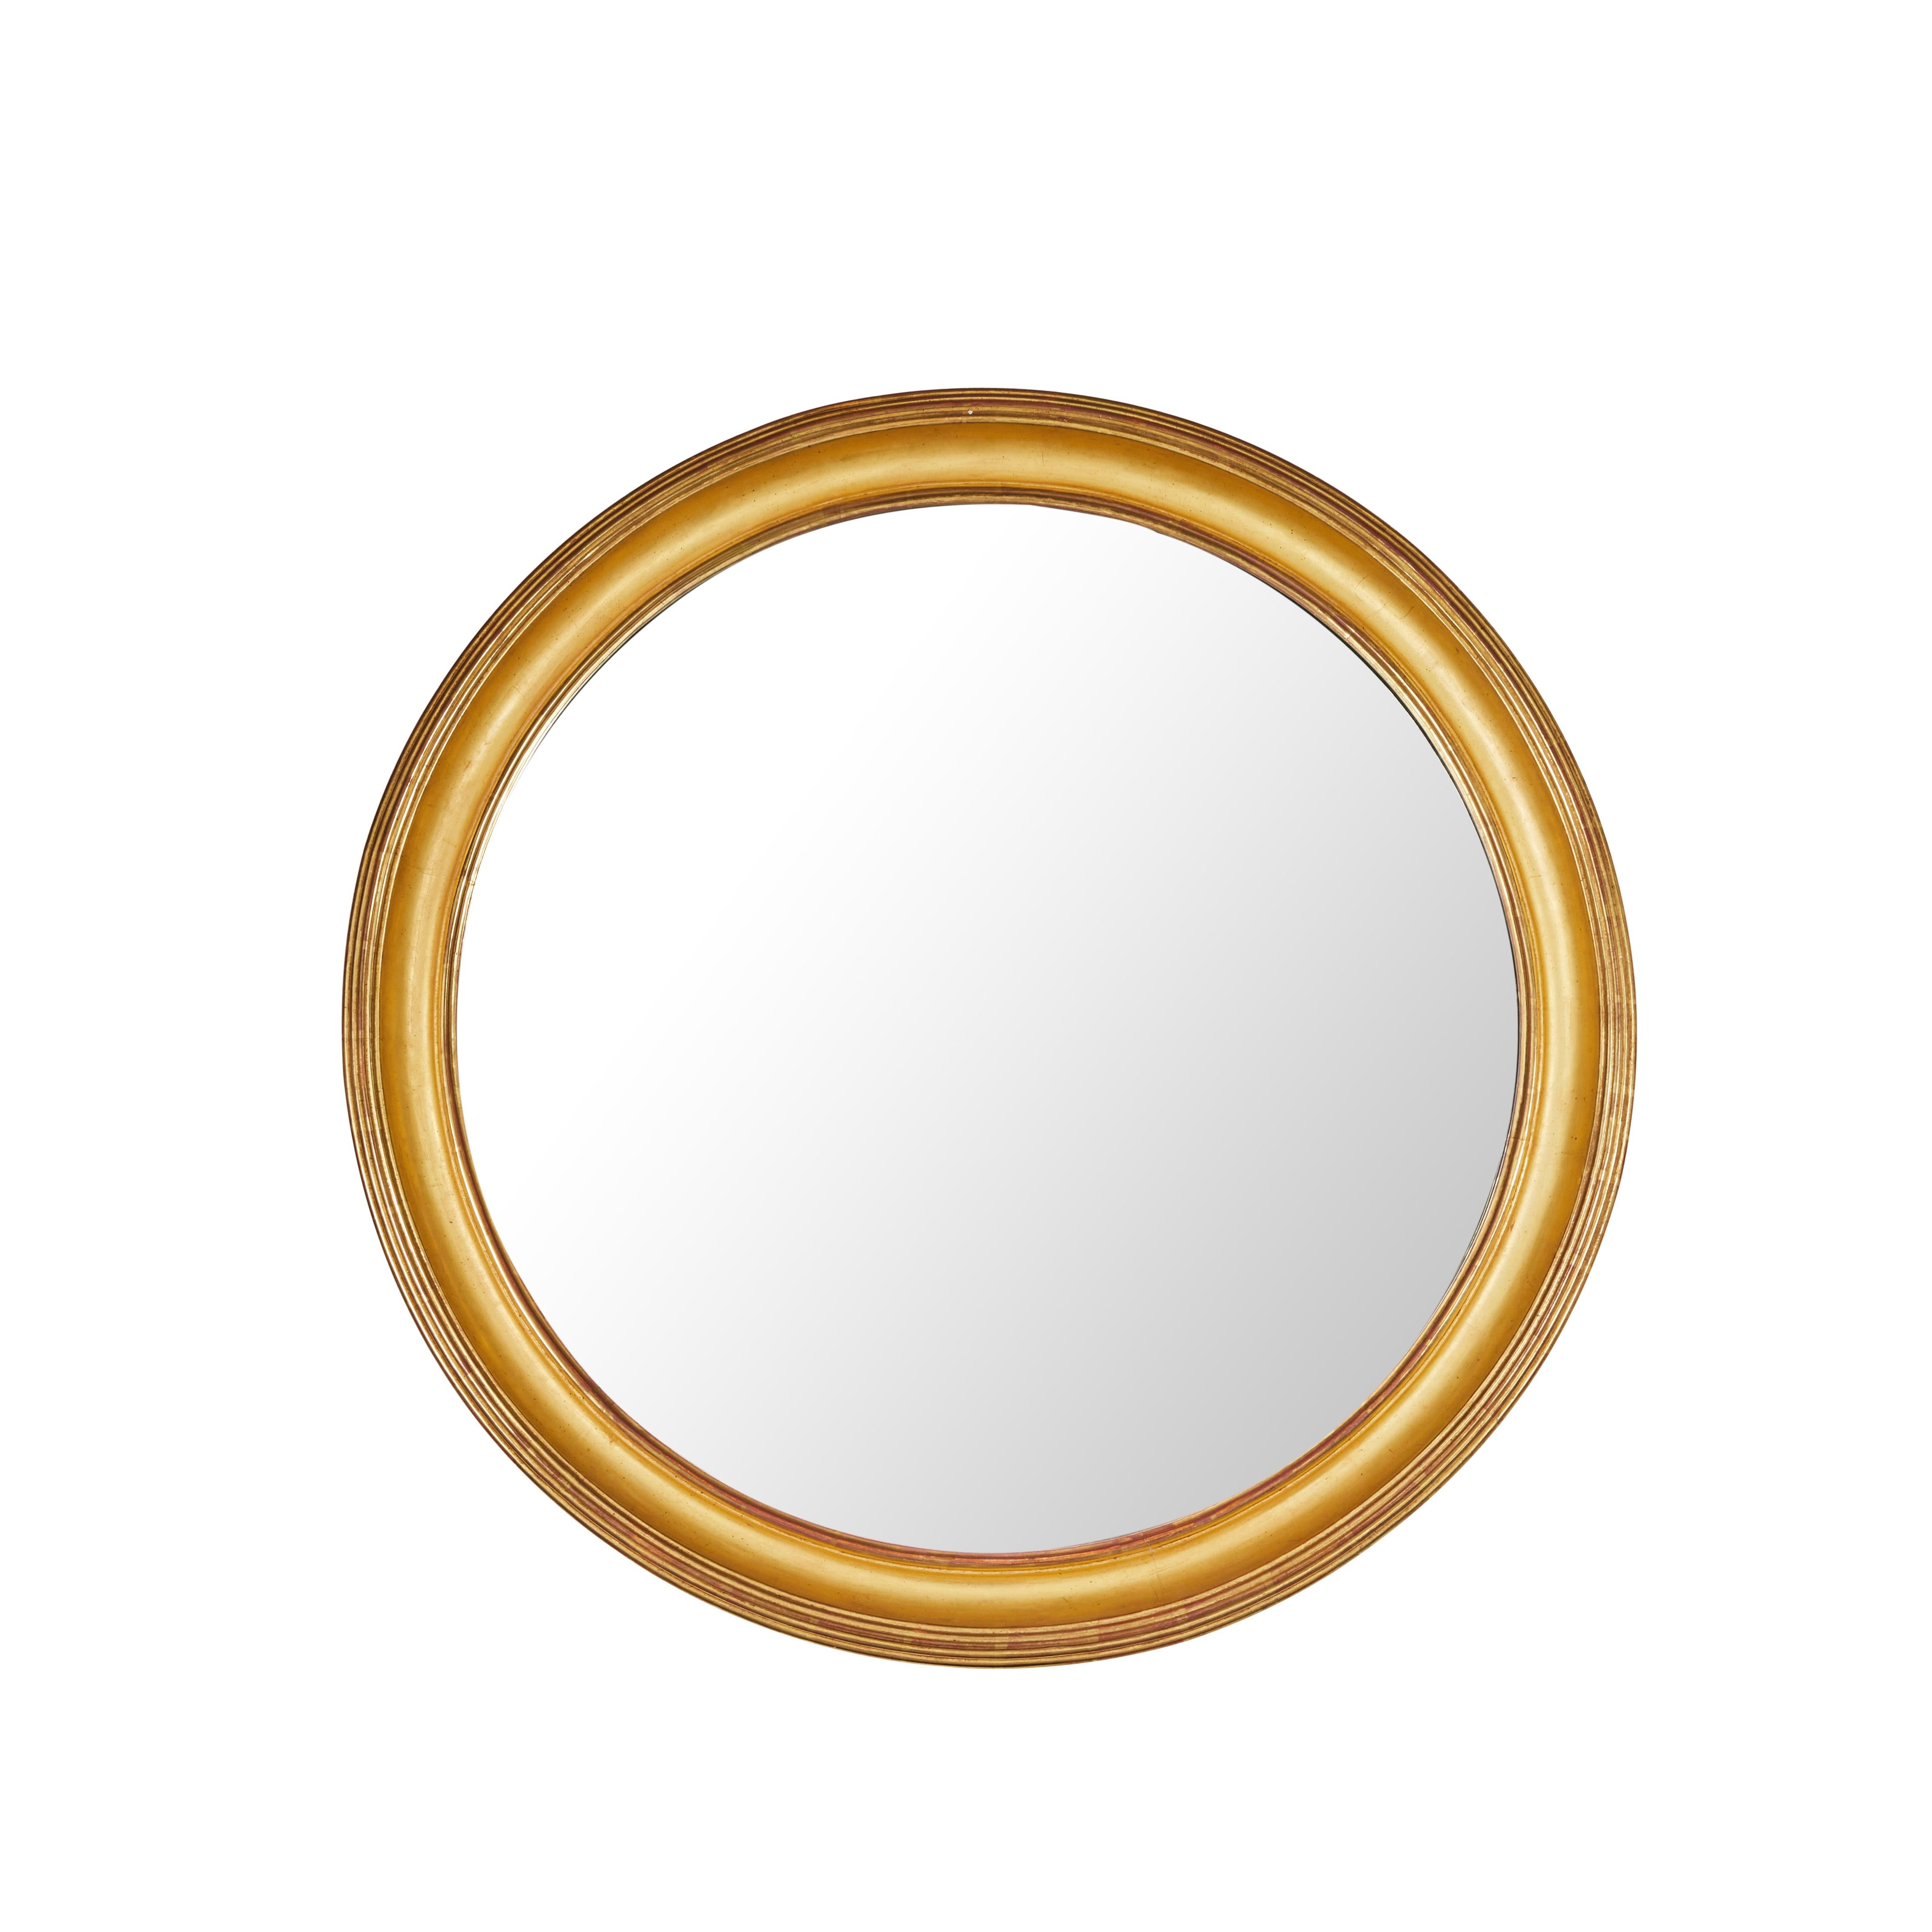 Cadre circulaire de grande envergure, sculpté à la main, gessoïsé et doré à l'or fin 22k, serti d'un verre miroir plus récent. Chacun d'entre eux a des bords striés entourant un intérieur convexe.  Vendu séparément.
